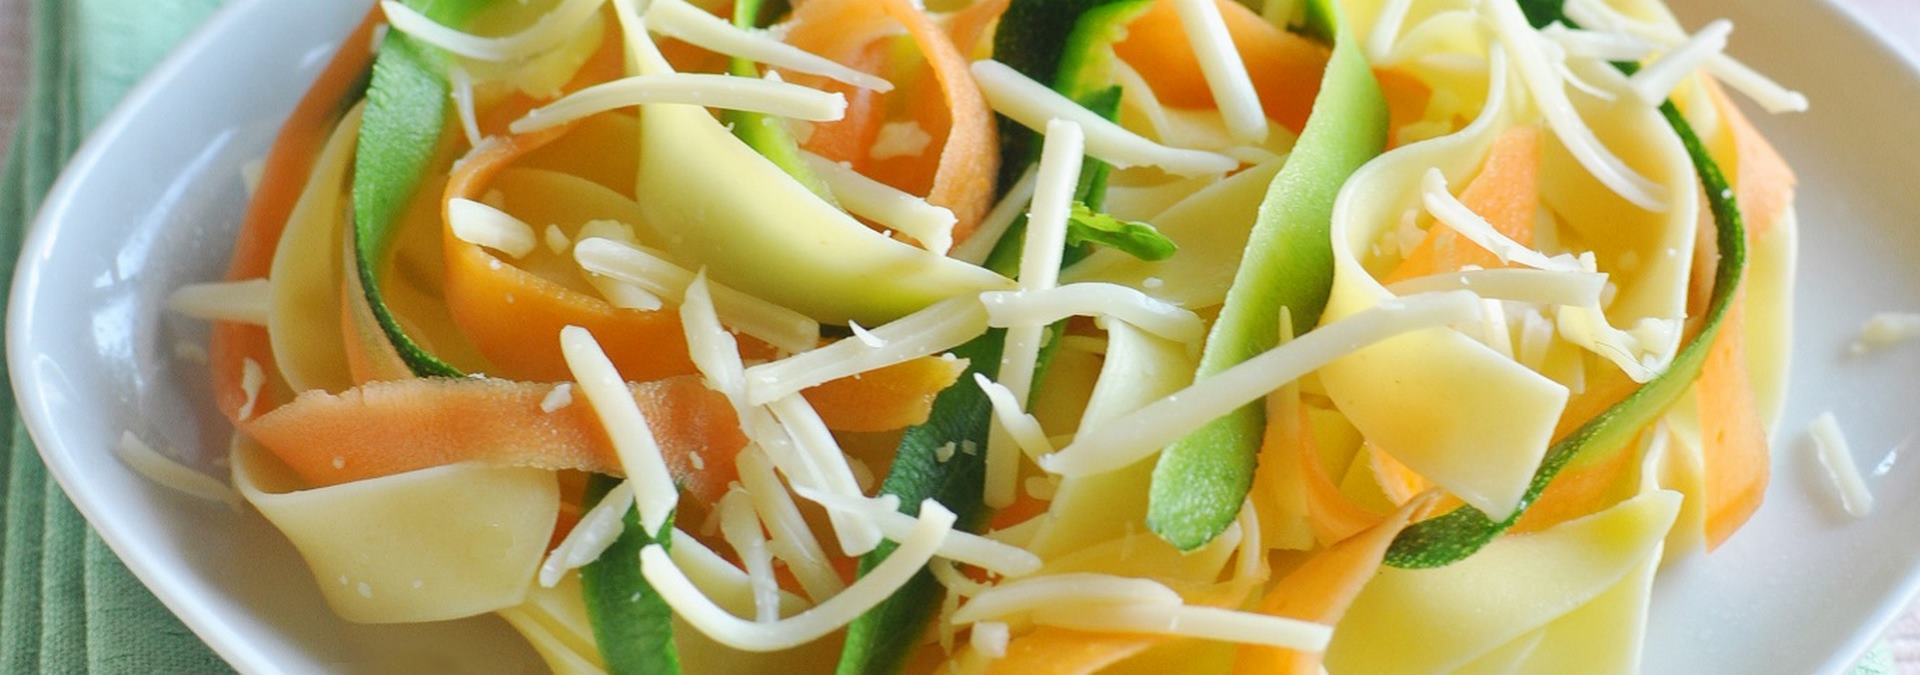 Recette de spaghettis carbonara aux légumes